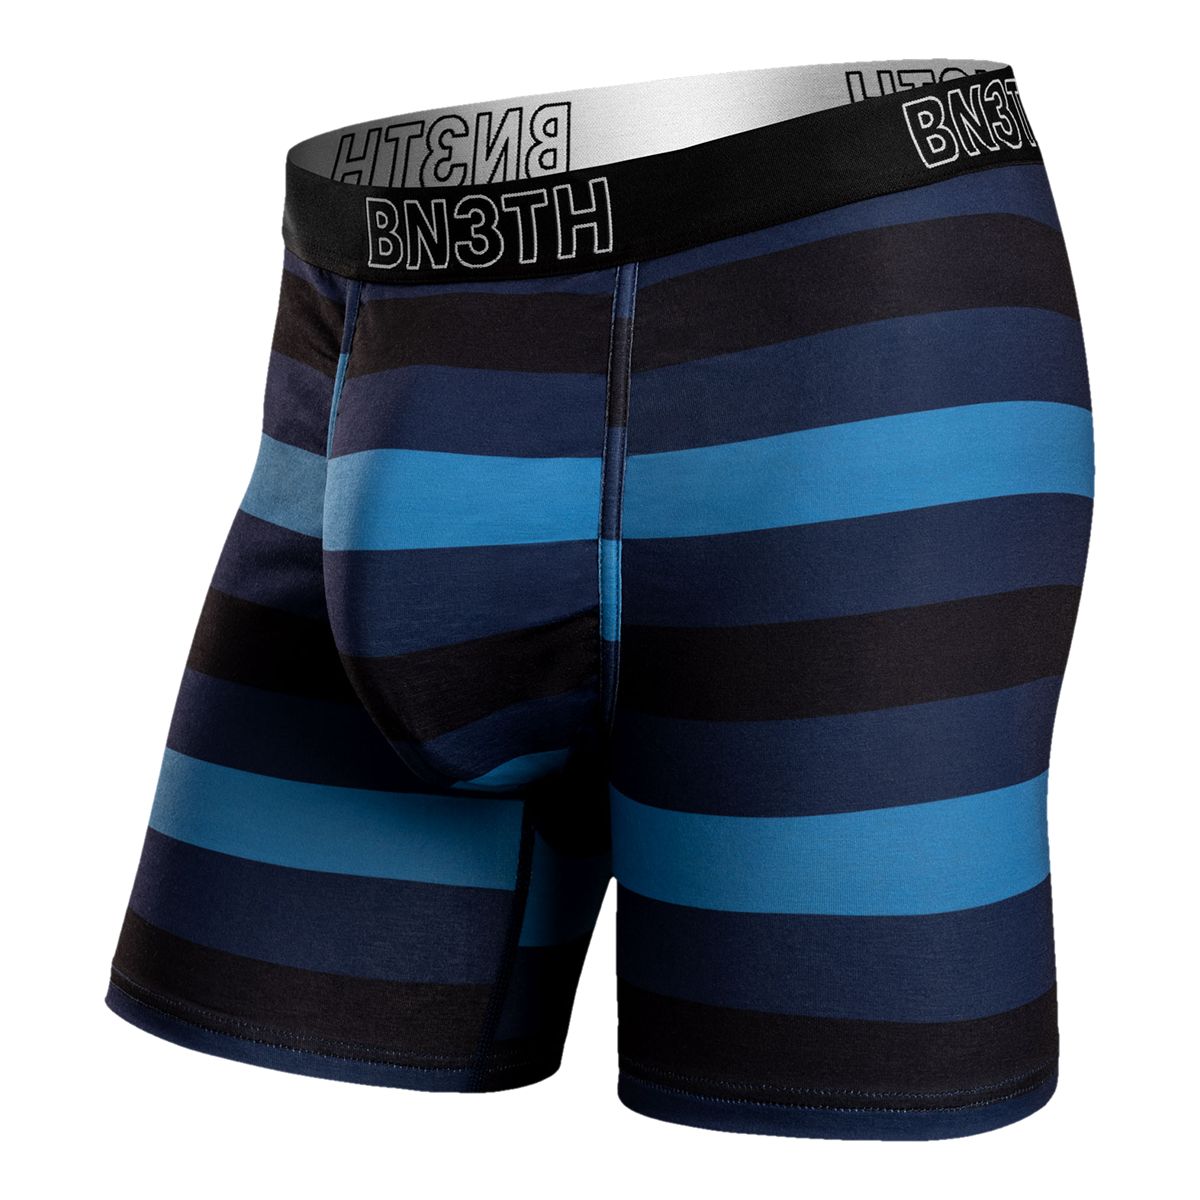  BN3TH Men's Classics Trunk Brief Premium Underwear